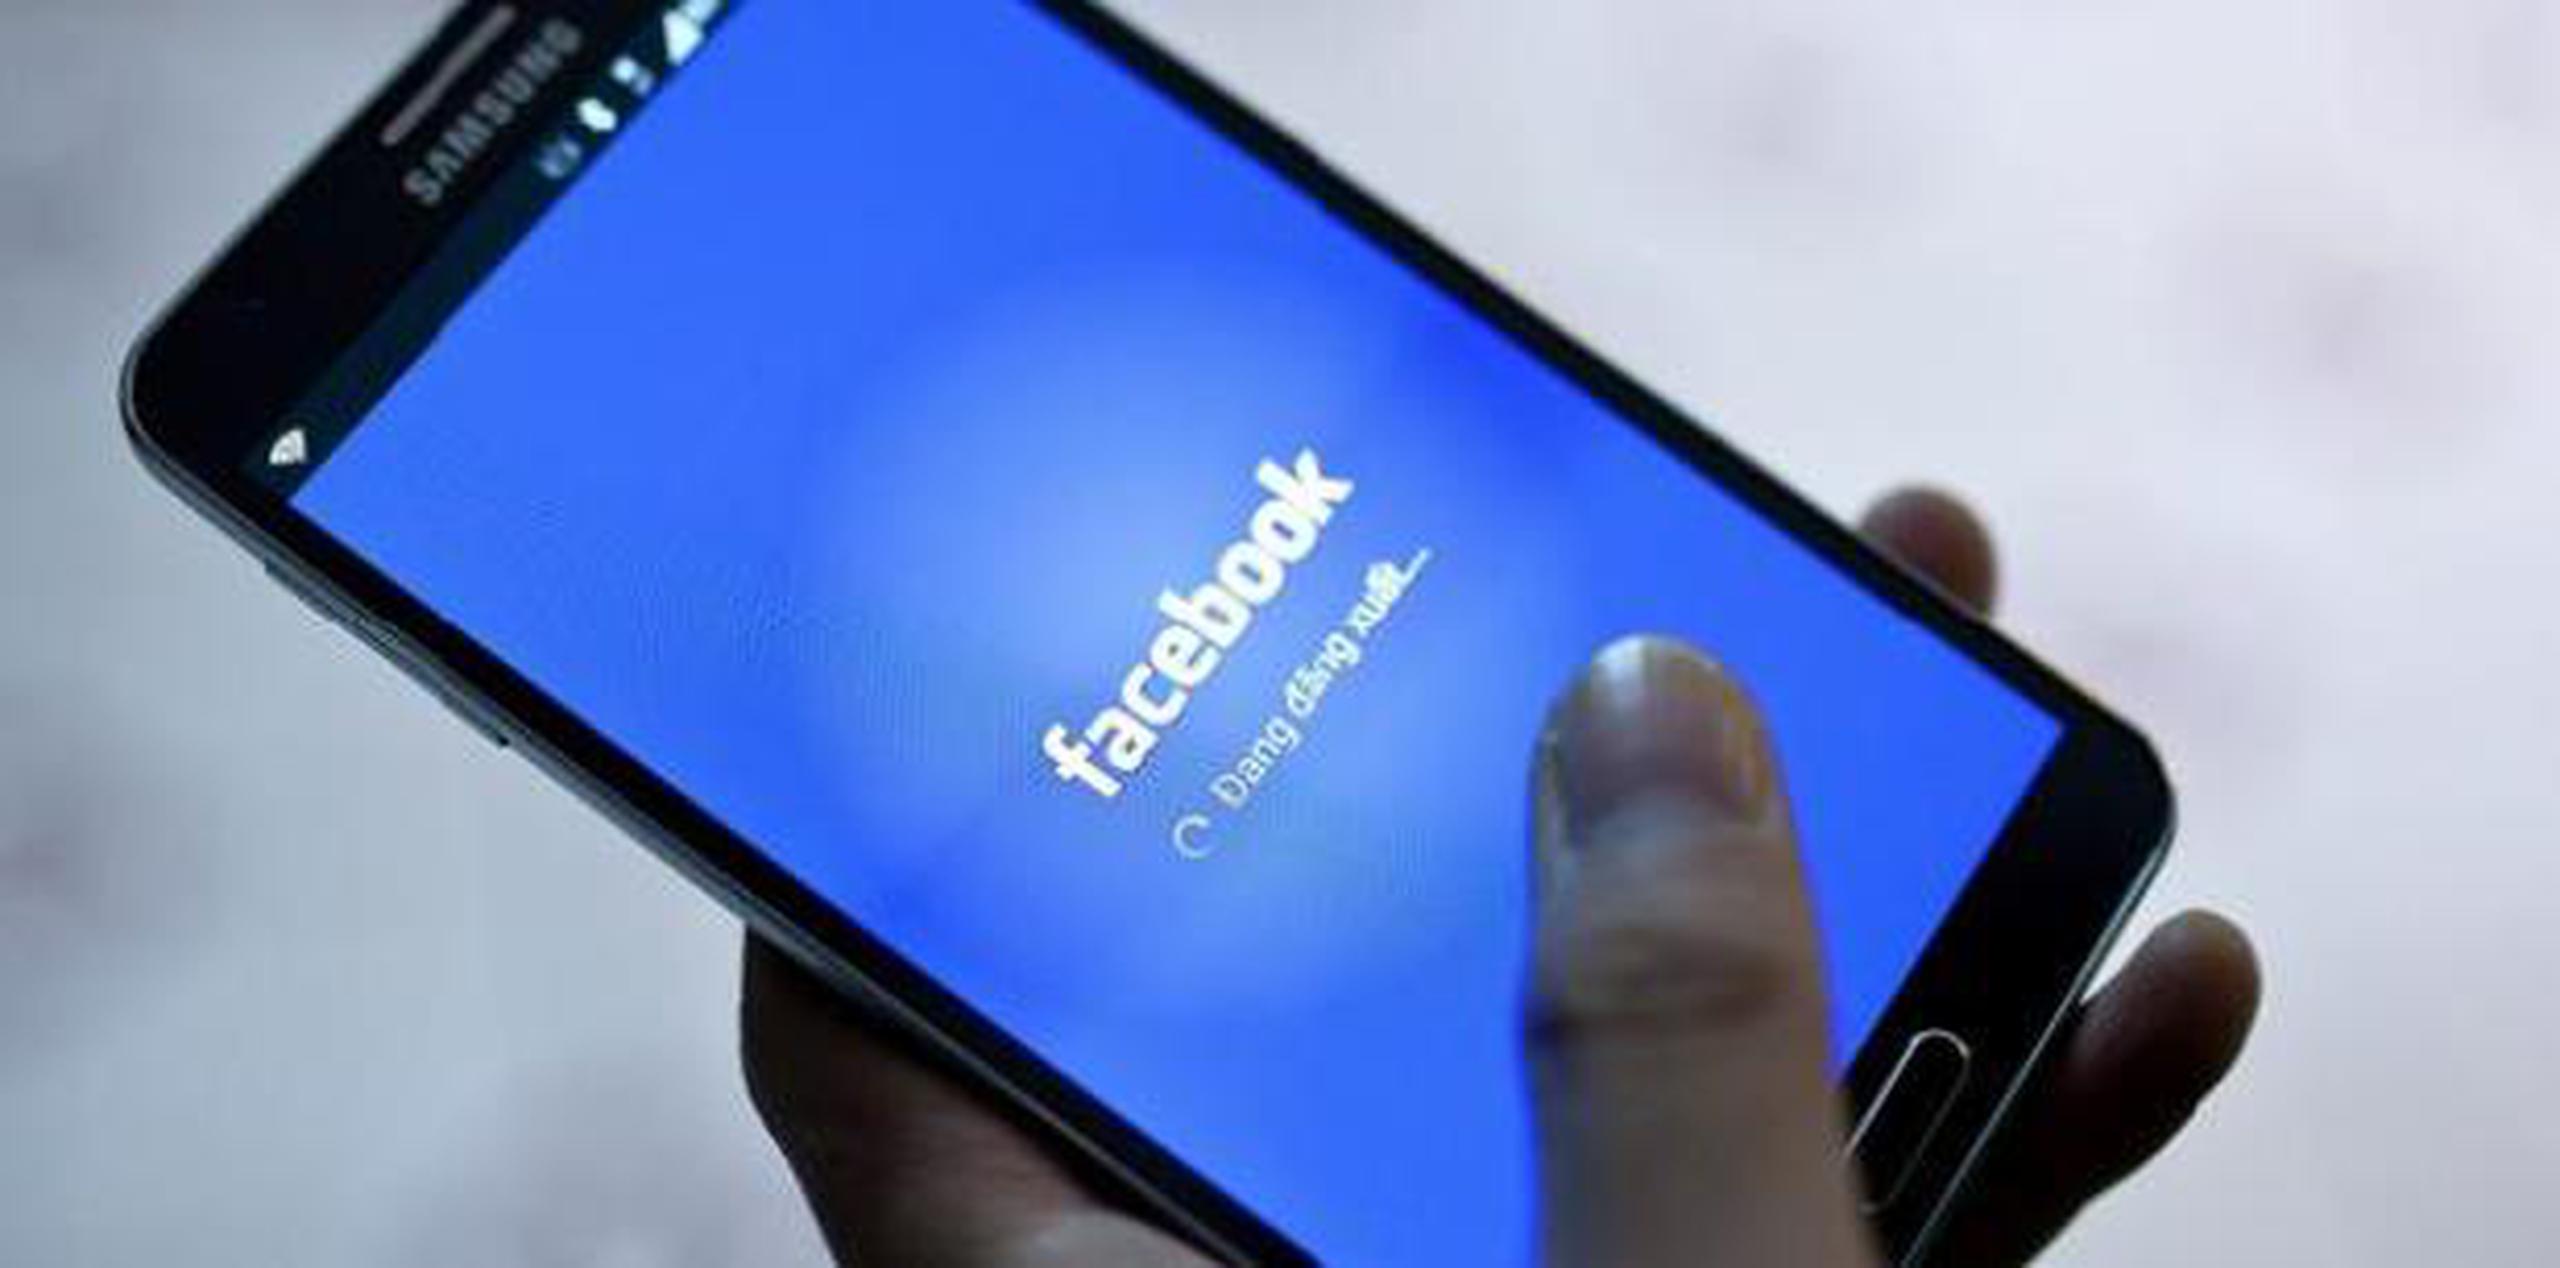 El tribunal de Luxemburgo afirma que la ley europea no se opone a que se pueda obligar a empresas como Facebook a suprimir o bloquear los datos a los que se refiera la medida cautelar acordada "a nivel mundial". (archivo)